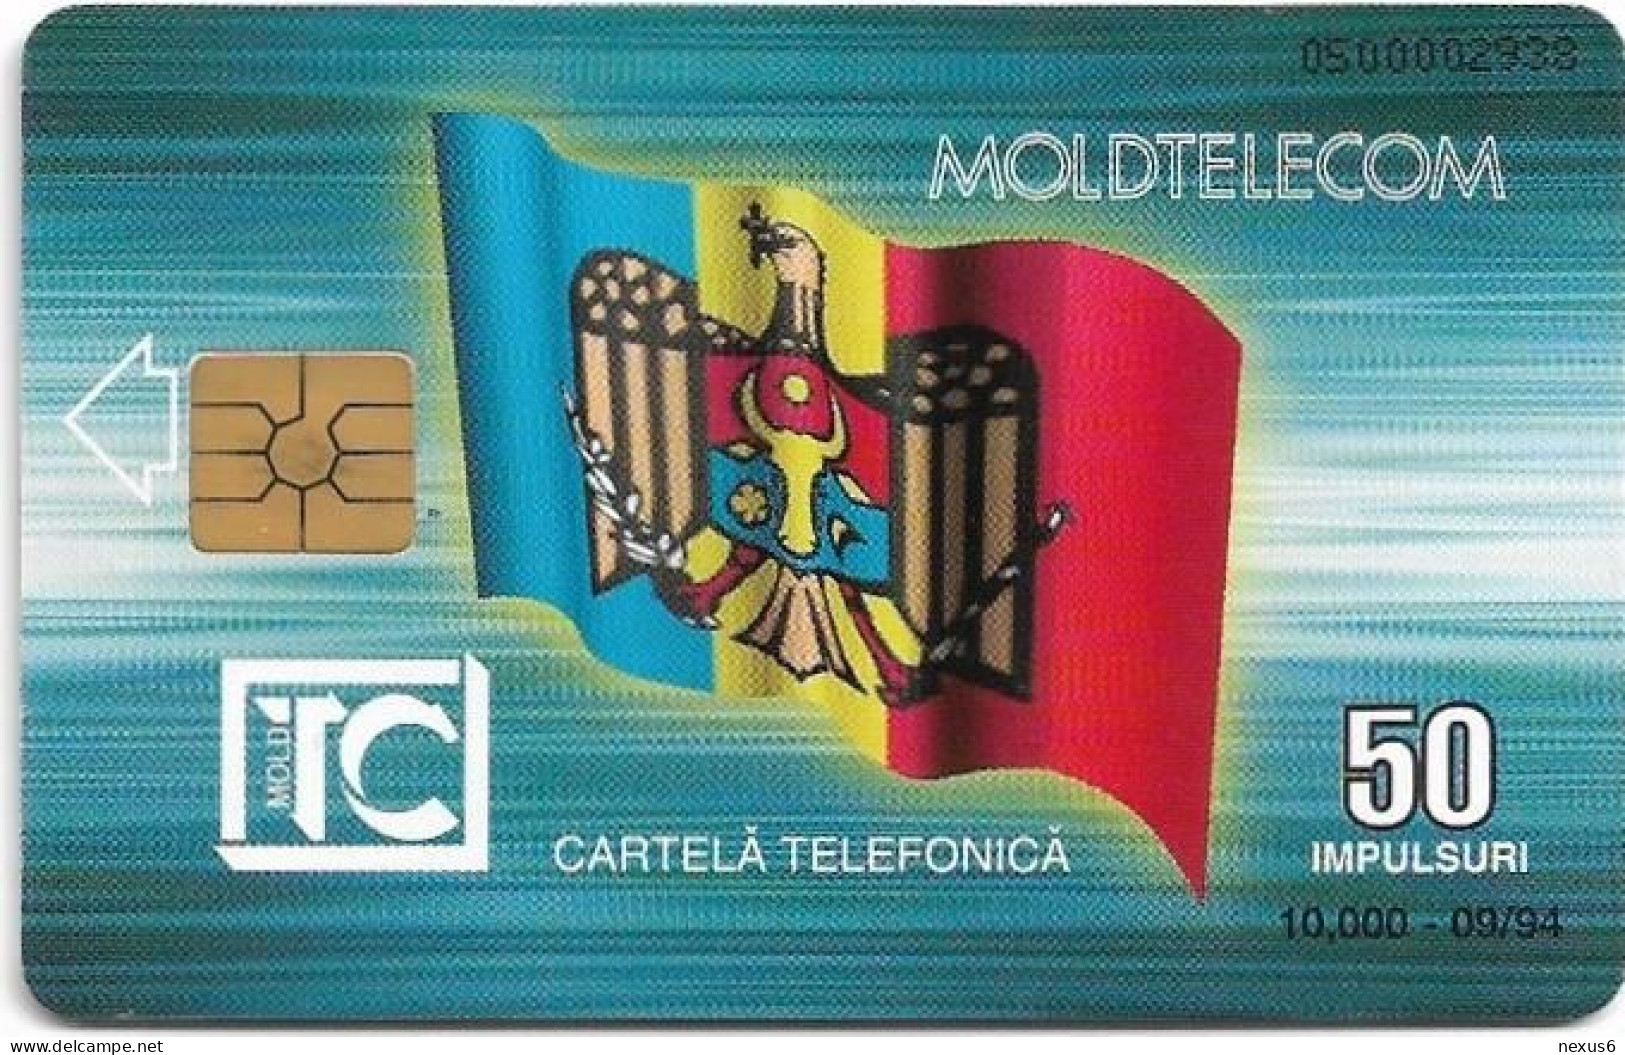 Moldova - Moldtelecom - Flag 1st Issue, Gem2 Black, 09.1994, 50U, 10.000ex, Used - Moldavie